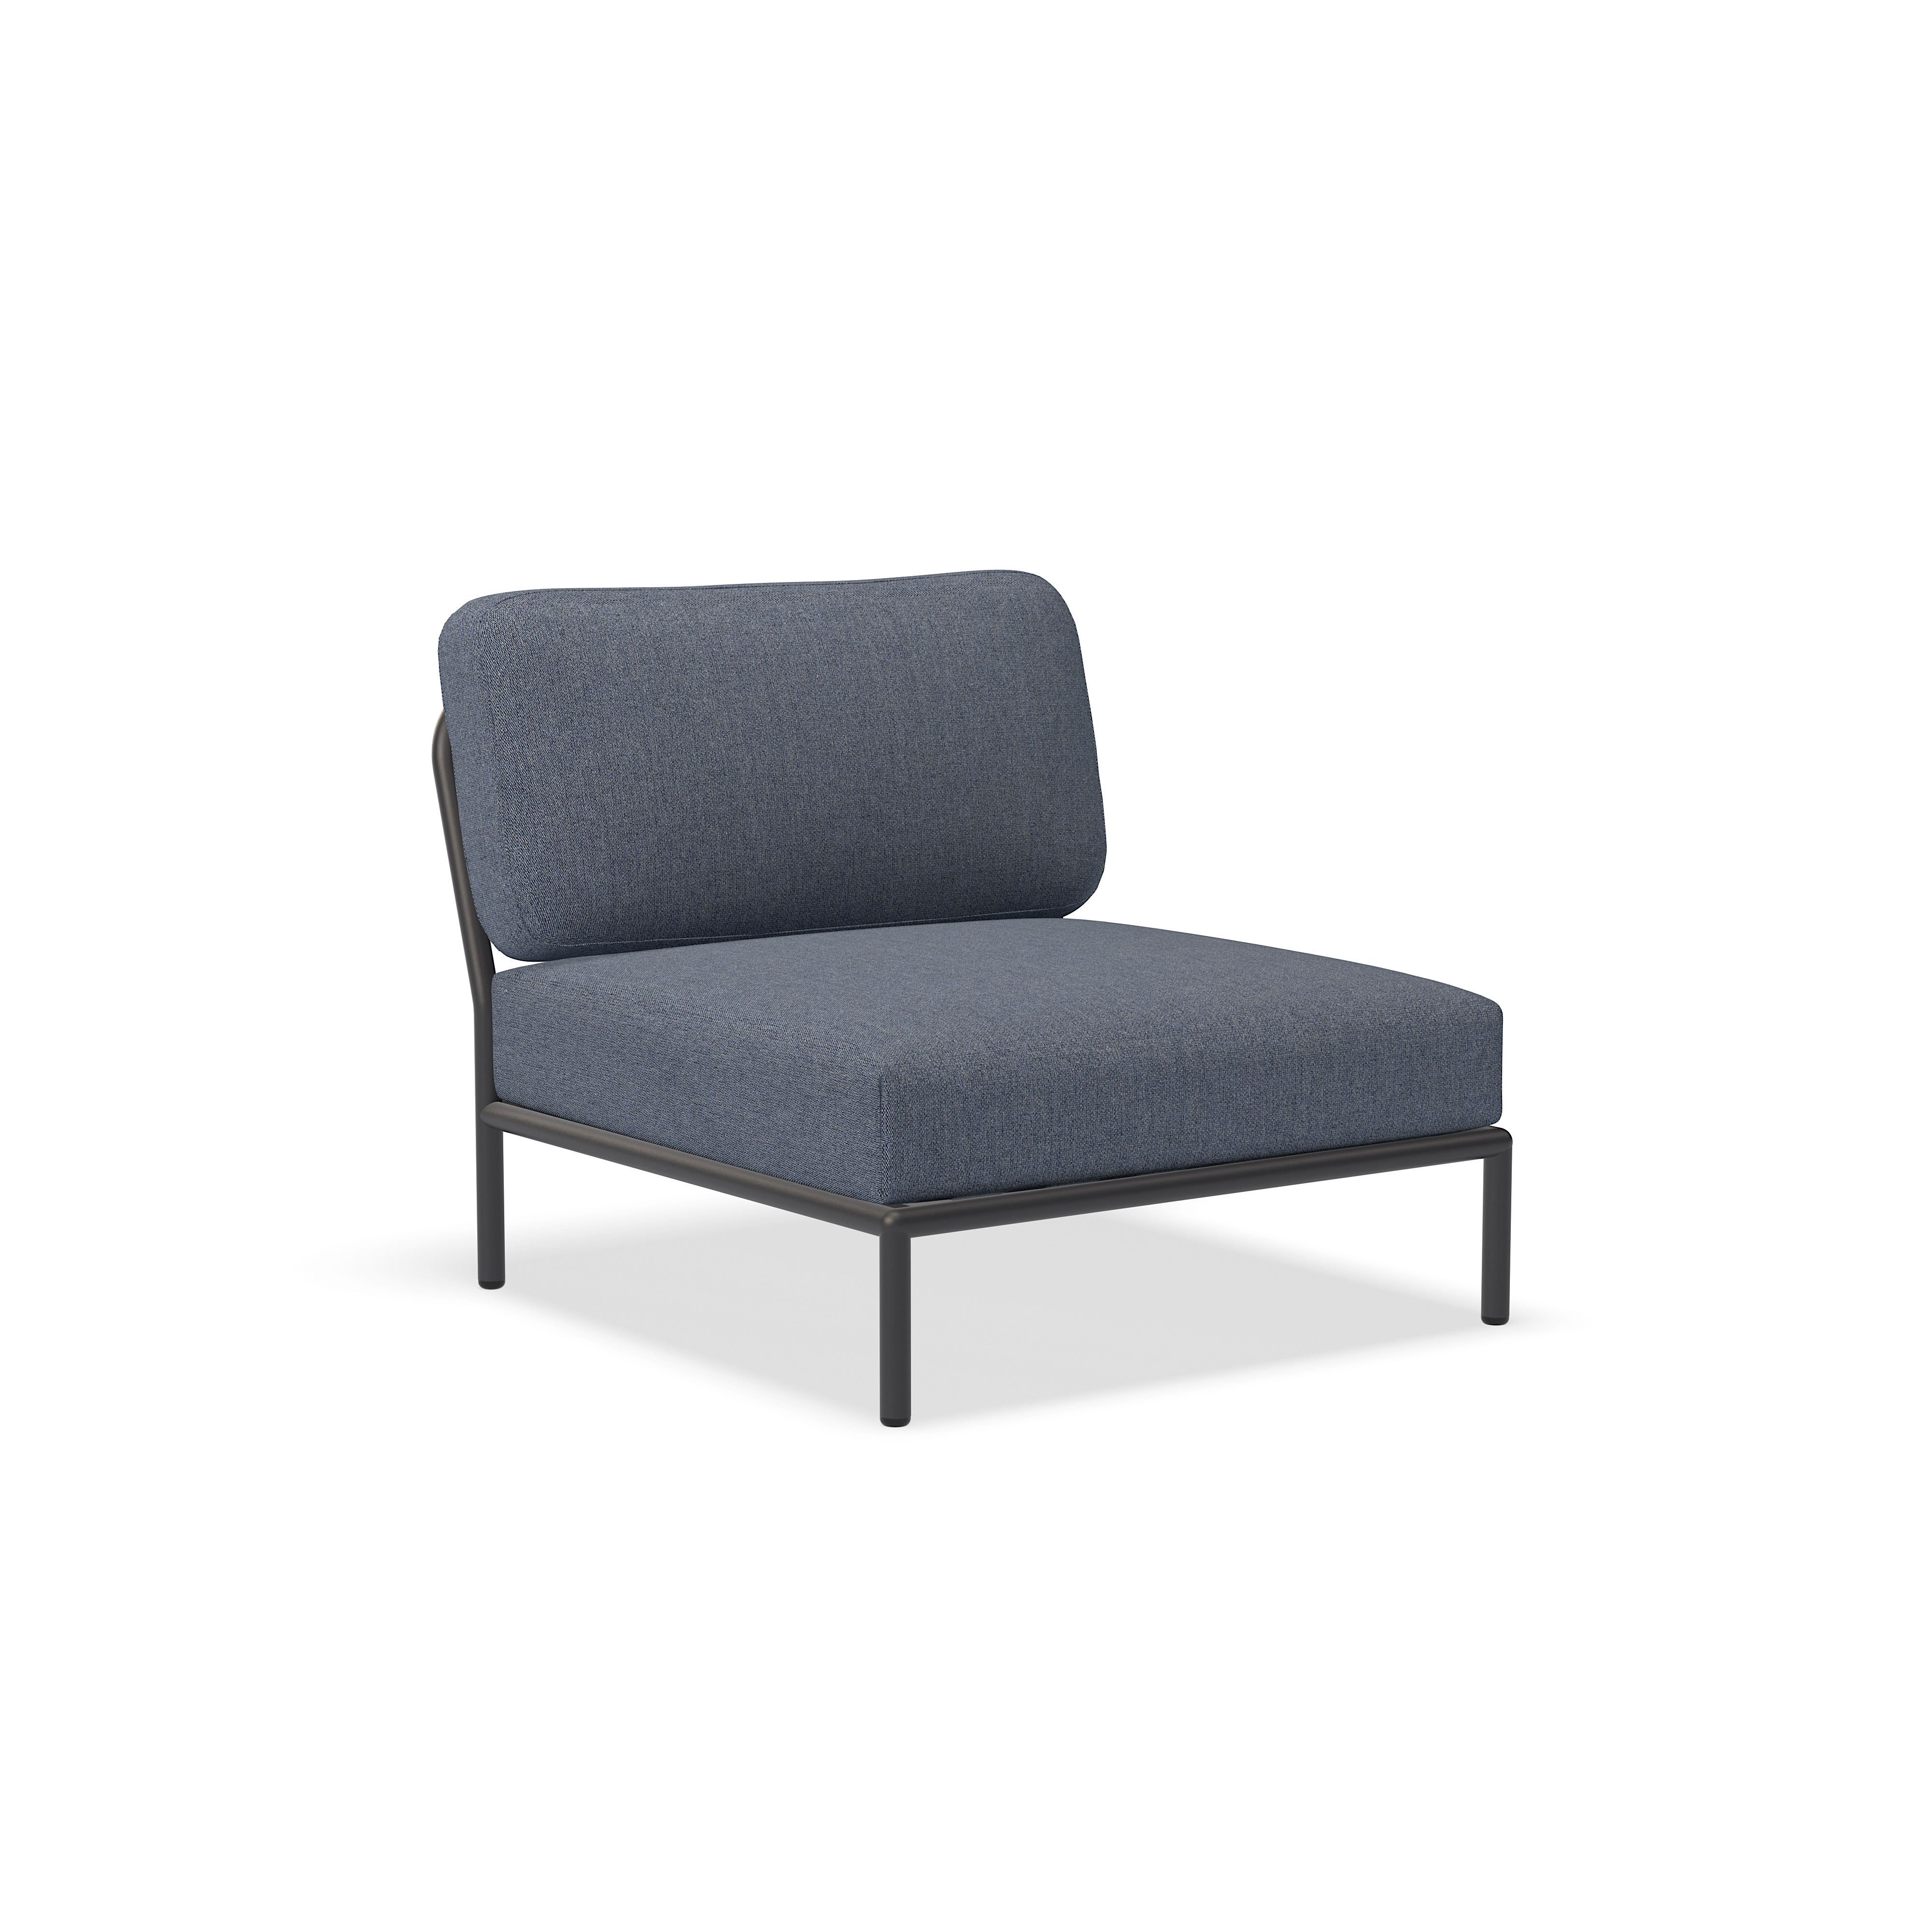 الكرسي - 12205-5851 - كرسي ، السماء (HERITAGE) ، هيكل رمادي غامق